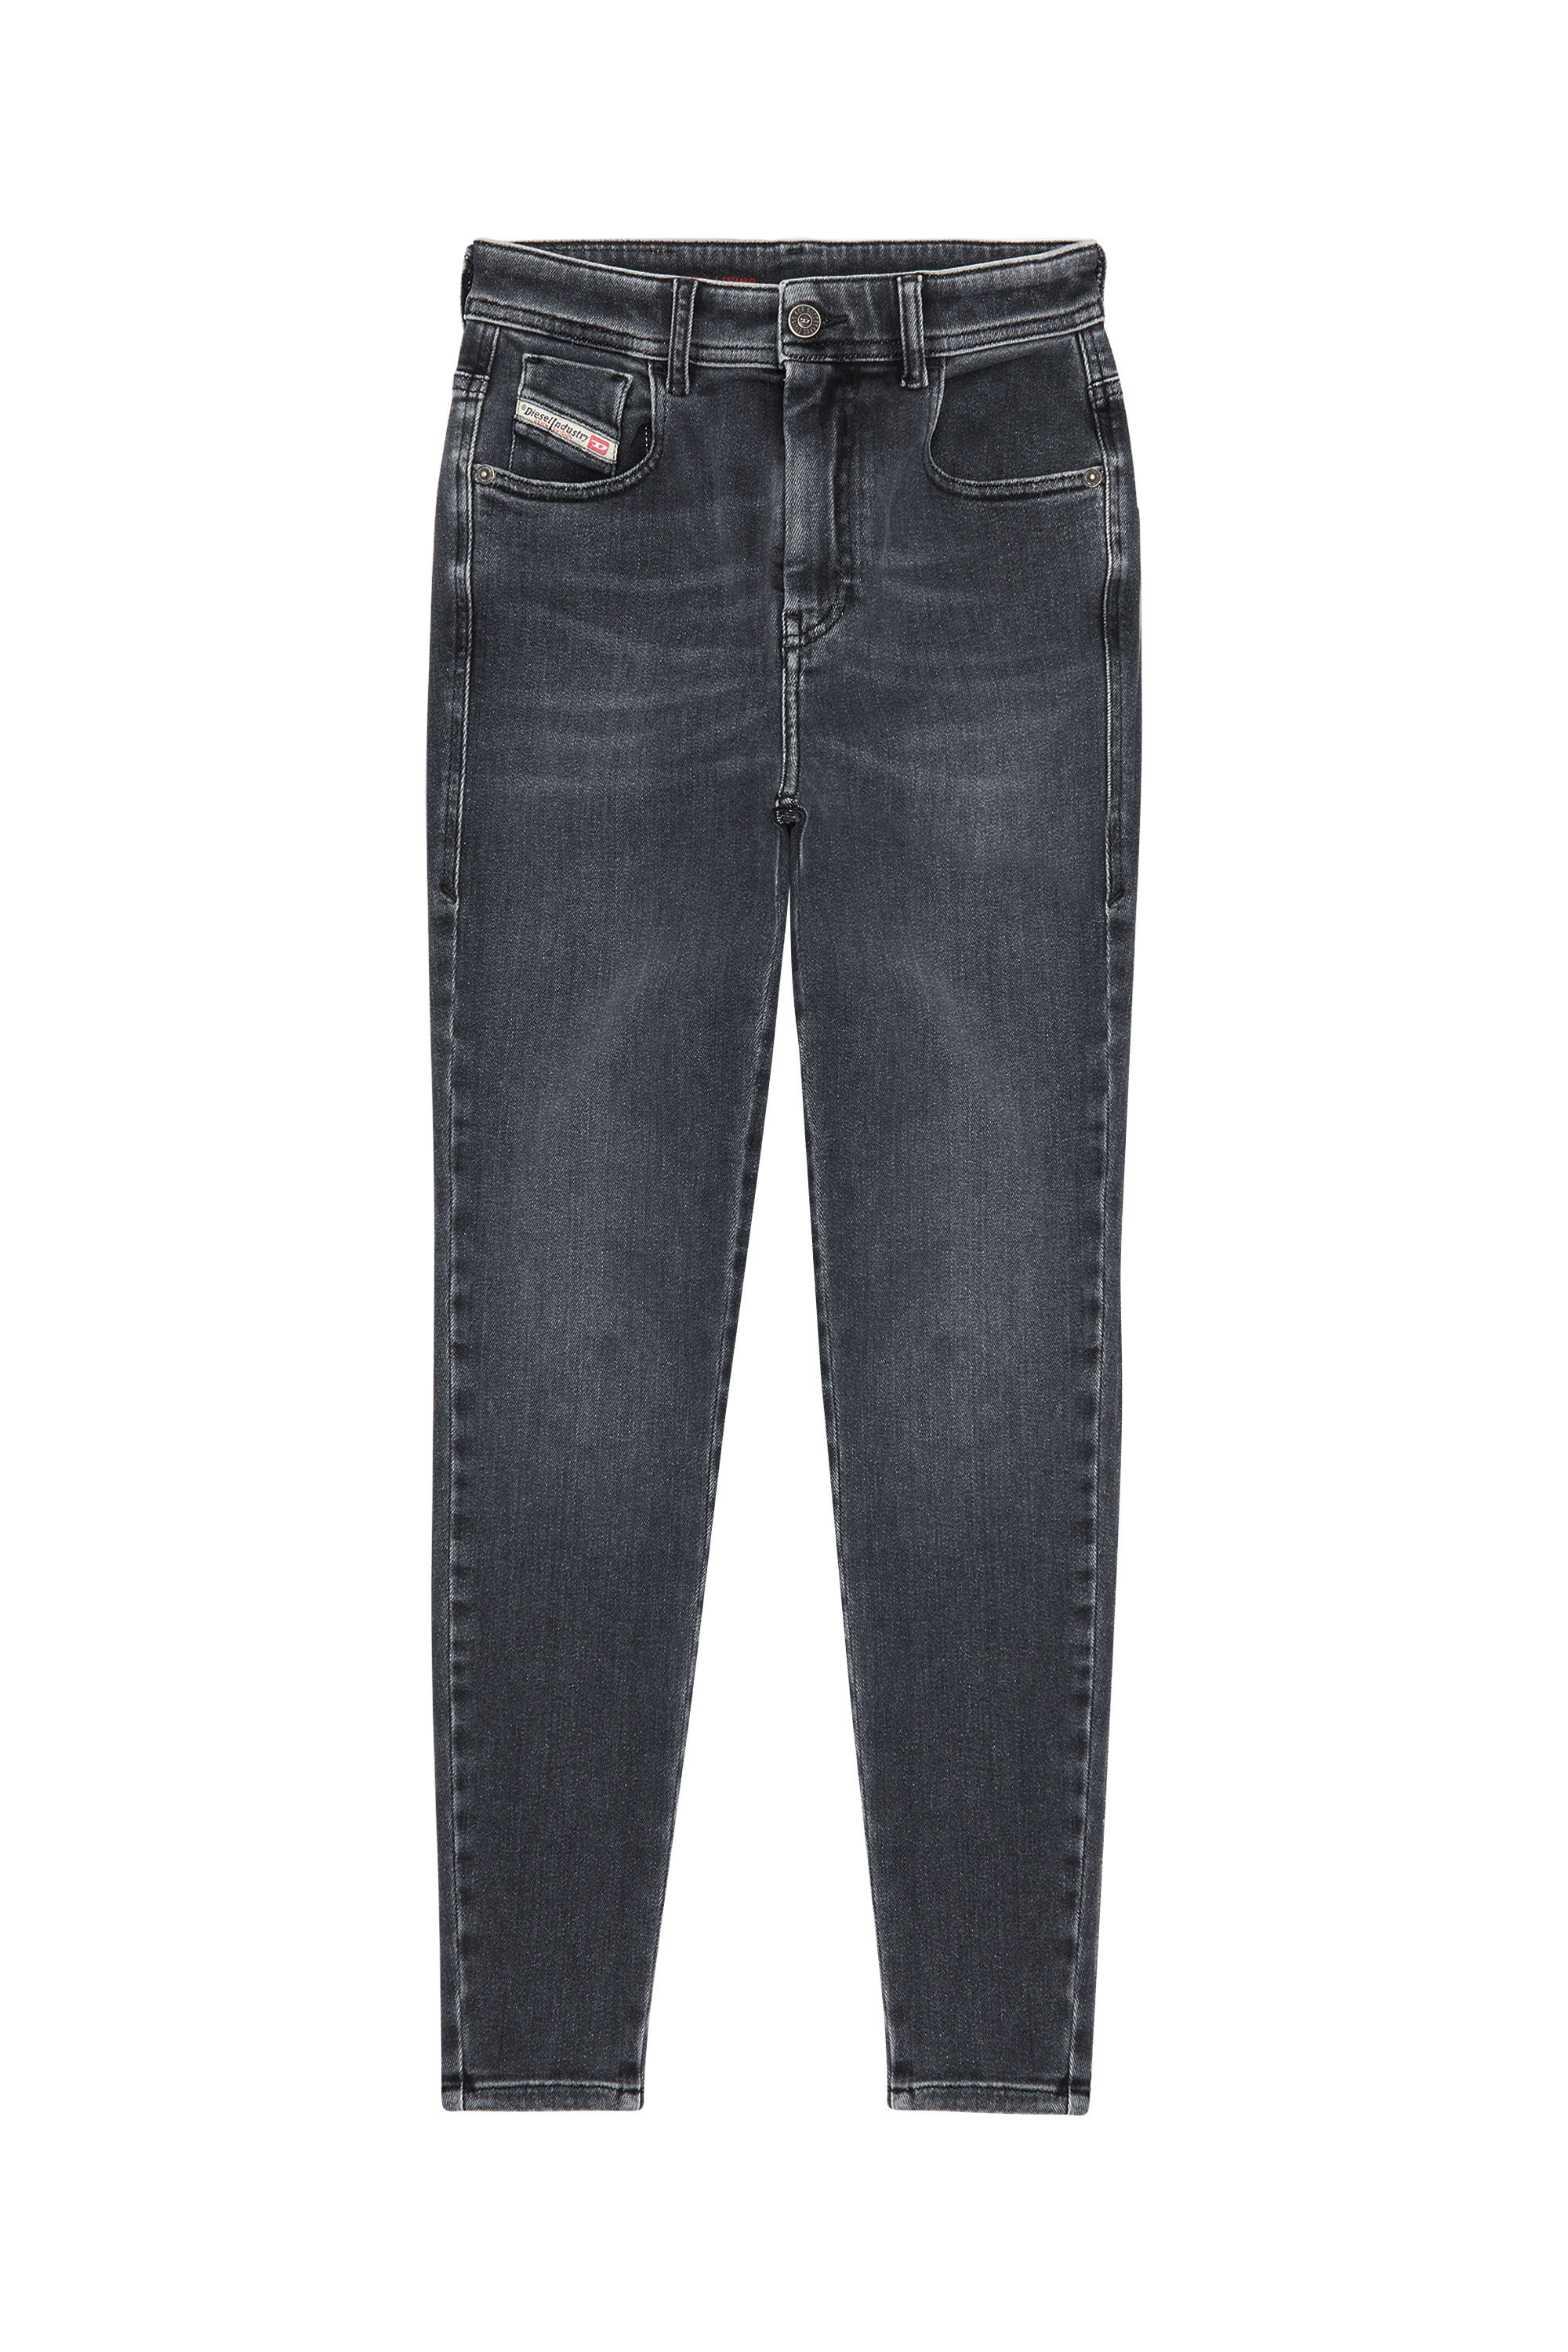 Diesel - Woman Super skinny Jeans 1984 Slandy-High 09D61, Black/Dark grey - Image 2